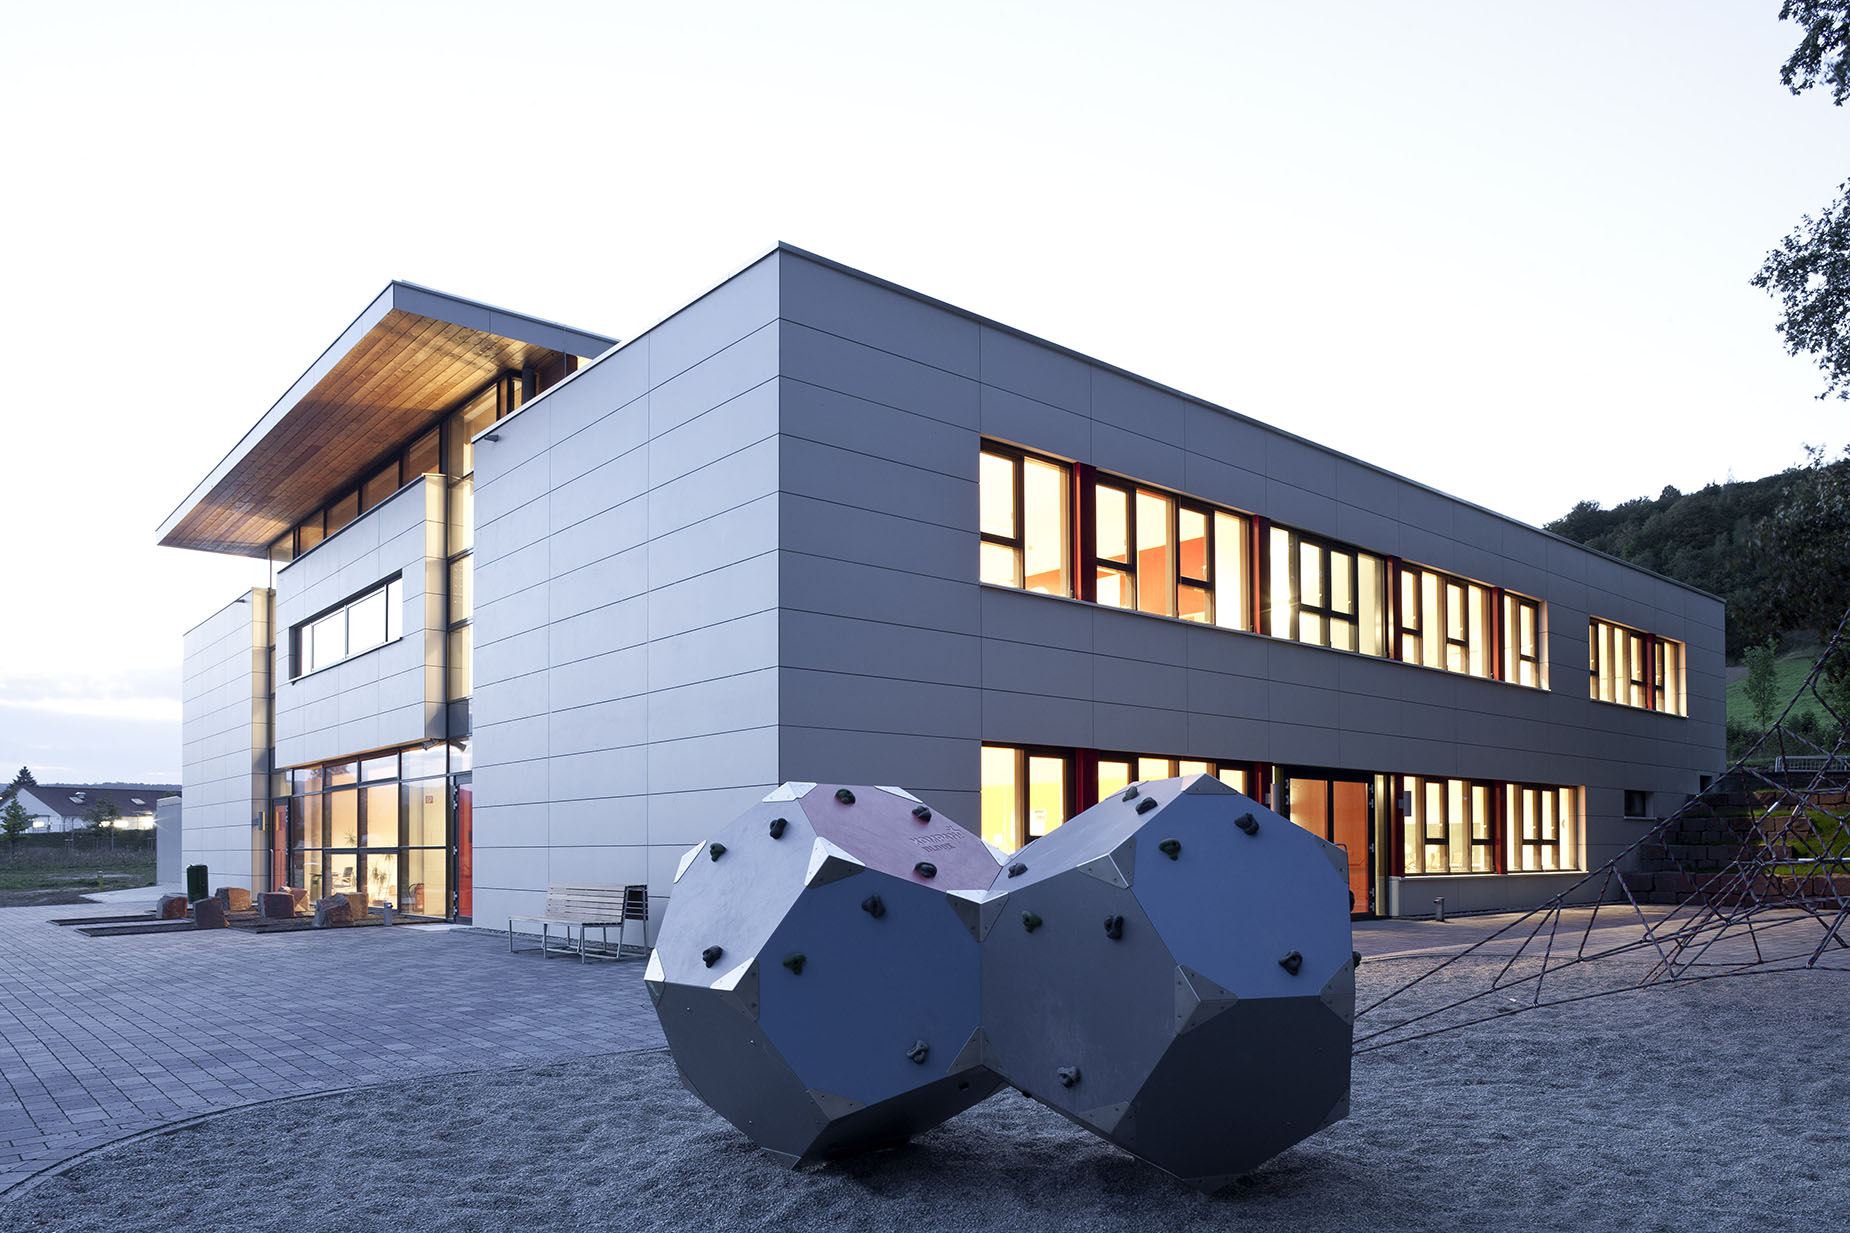 New Construction, Paul-Gerhardt School in Dassel